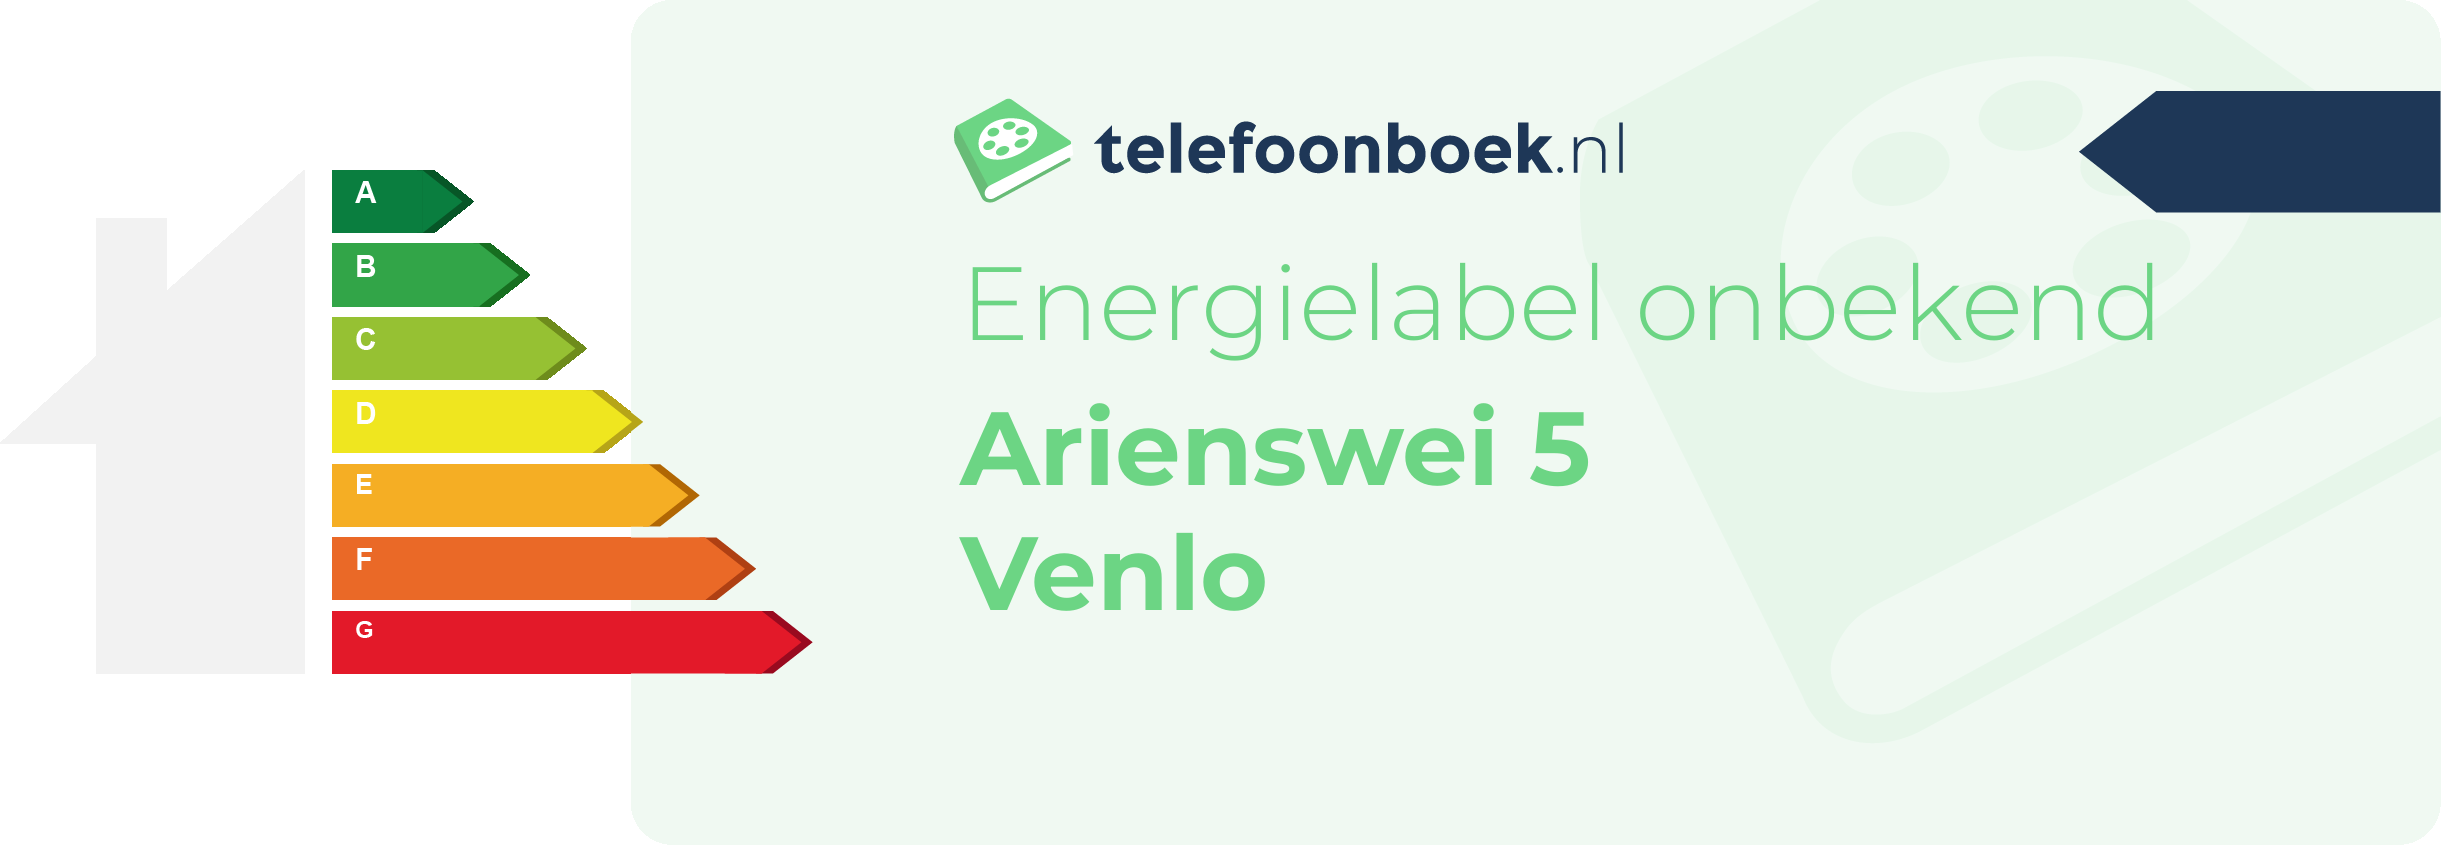 Energielabel Arienswei 5 Venlo